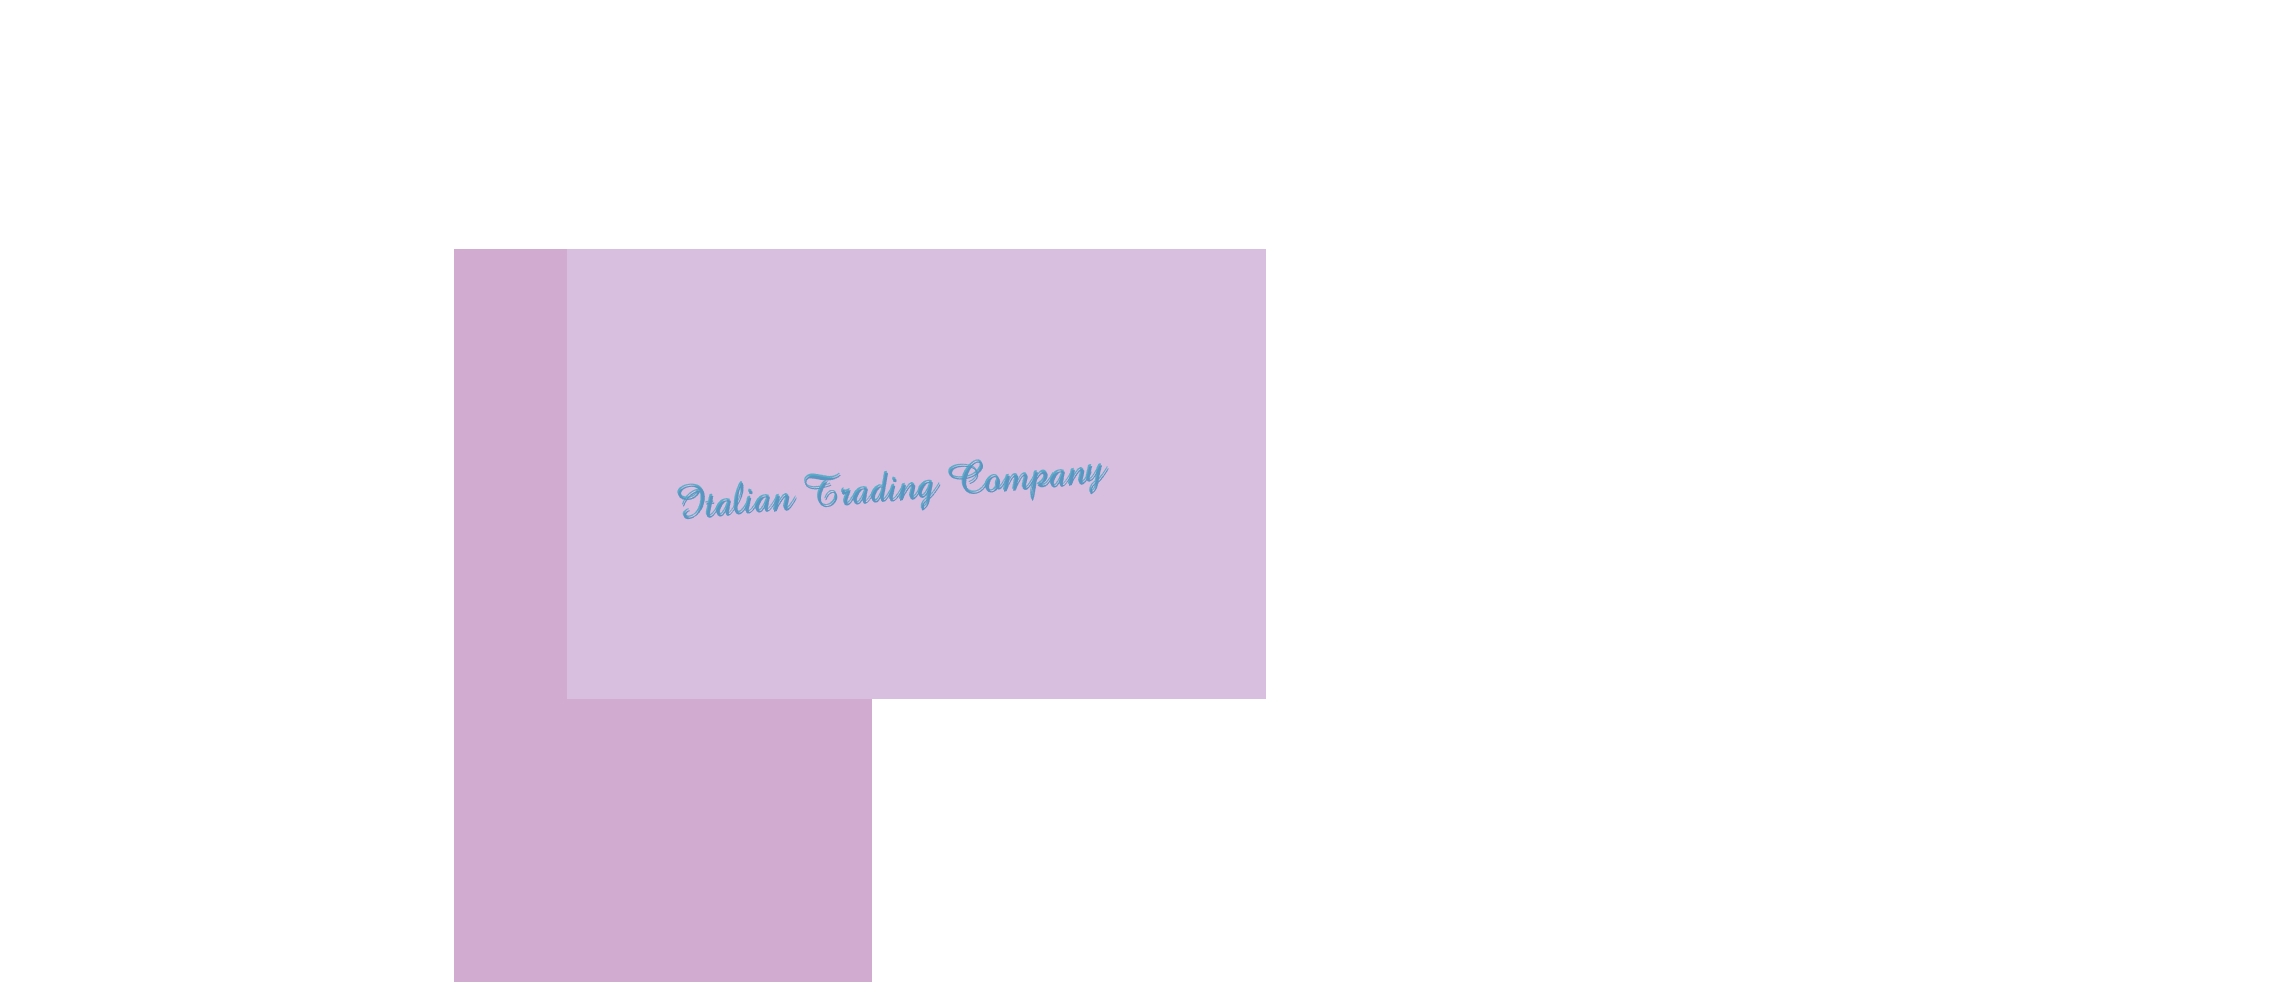 logo Italian Trading Company